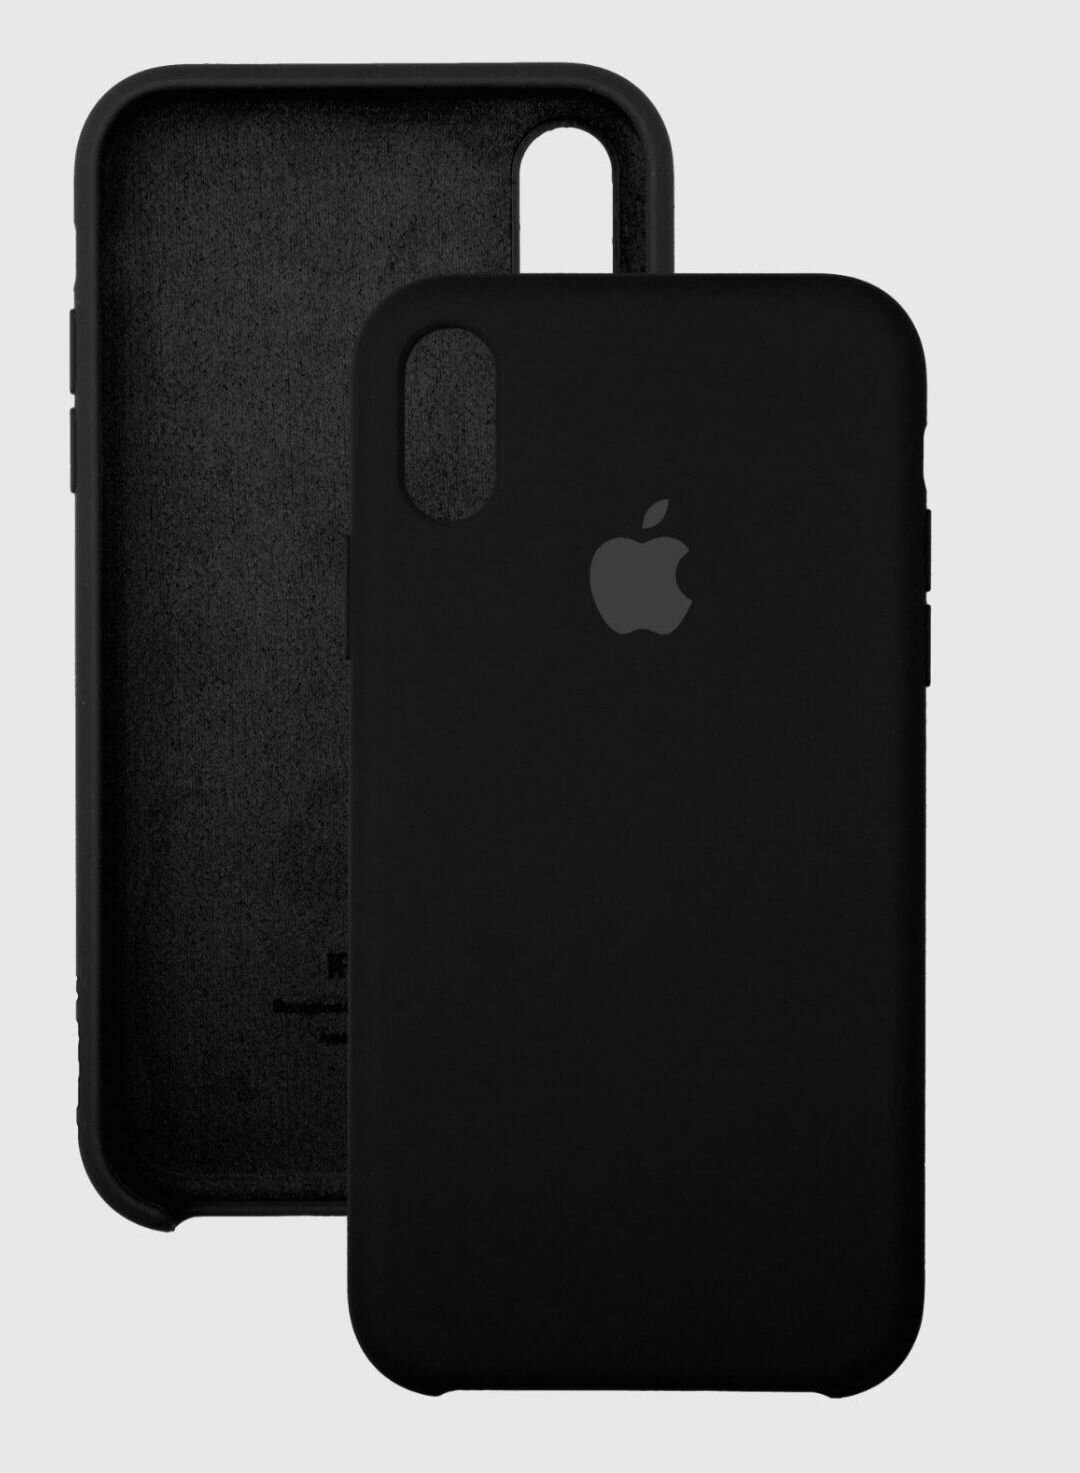 IPhone XS MAX чёрный силиконовый чехол Silicone case для айфон 10 икс эс макс